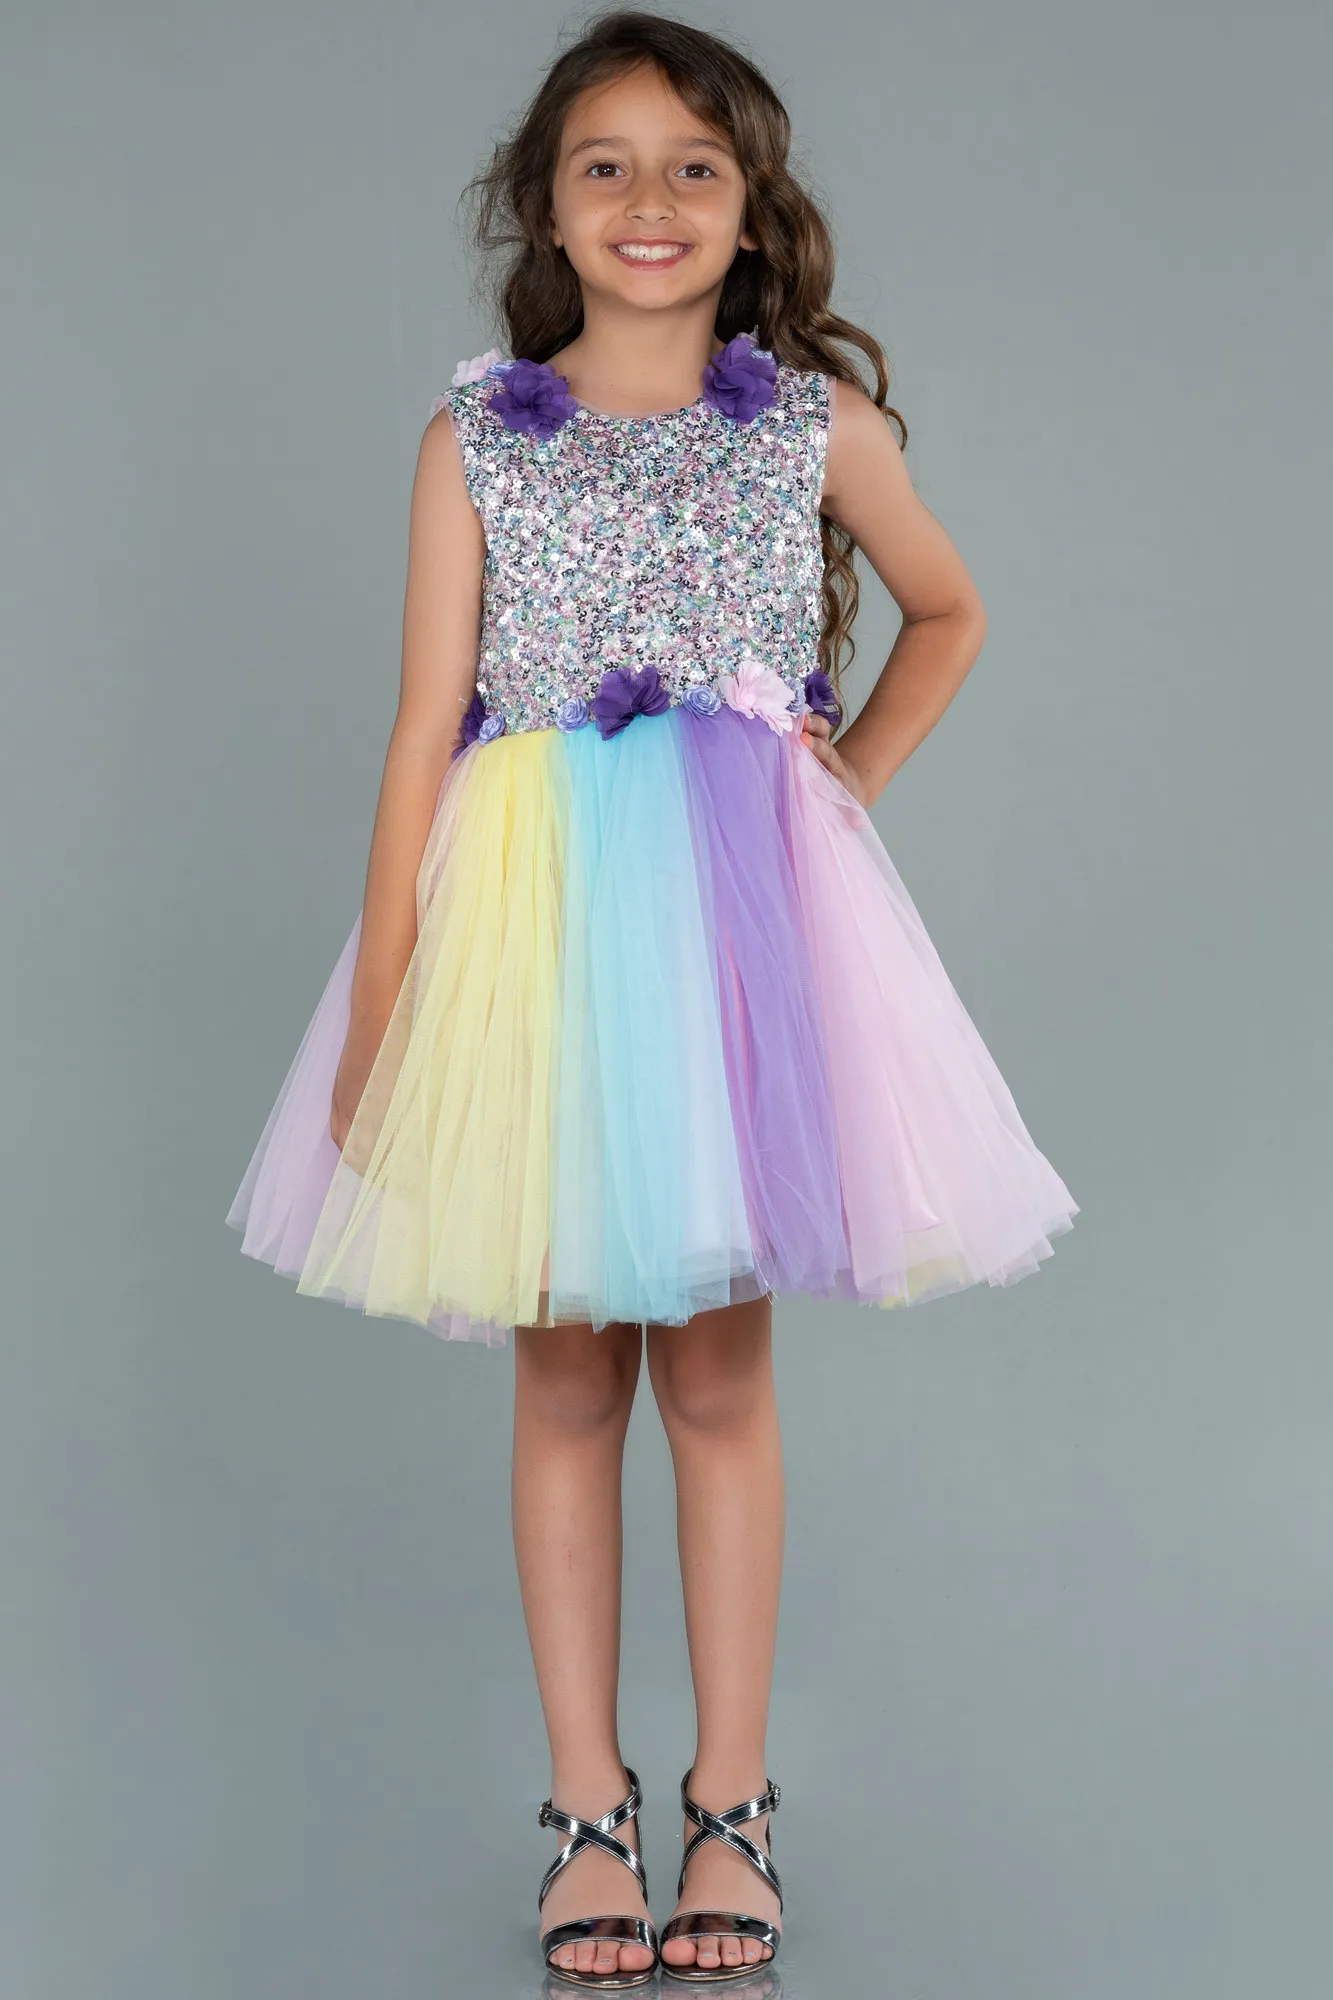 Rinser-Short Girl Dress ABK1435